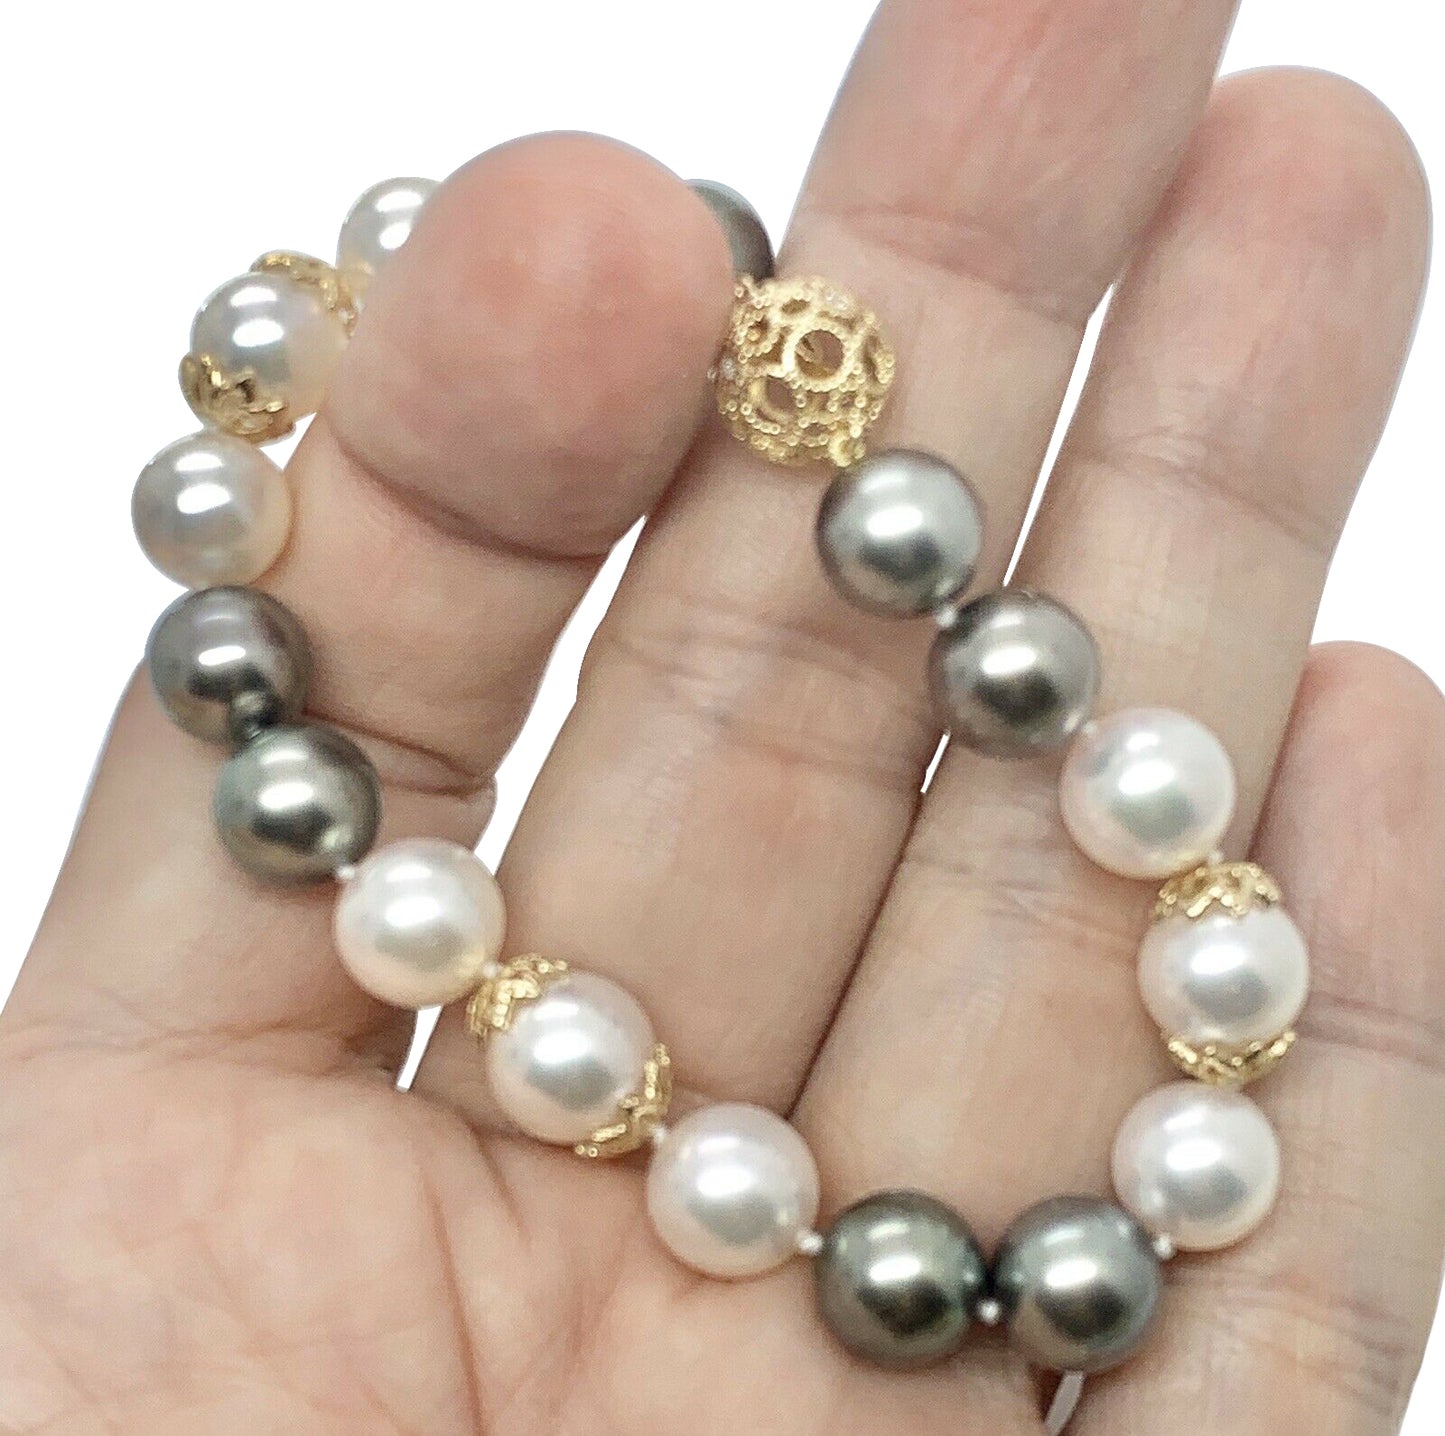 Diamond Akoya Tahitian Pearl Bracelet 14k Gold 7.5" Certified $3,950 917753 - Certified Fine Jewelry